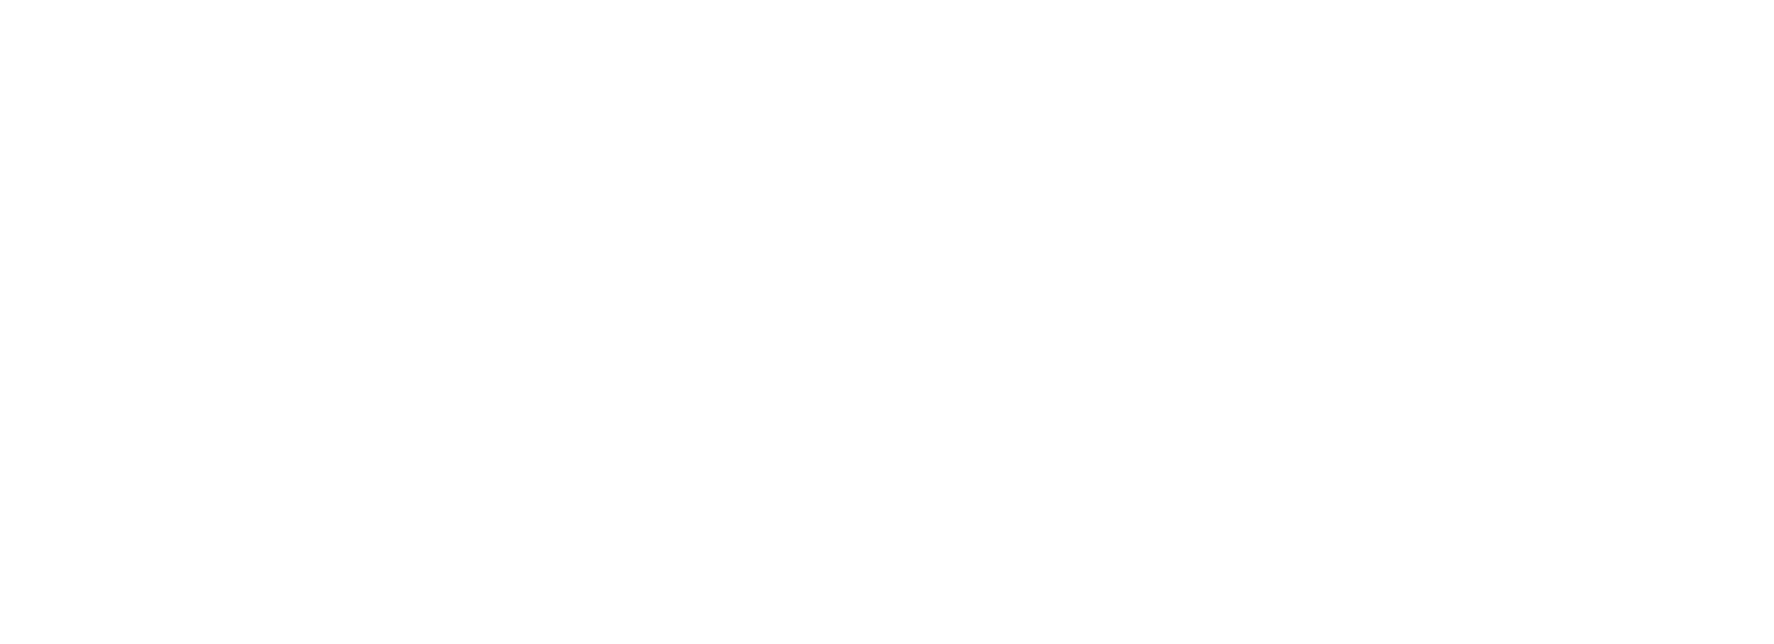 Fondazione Franco Demarchi - Trento